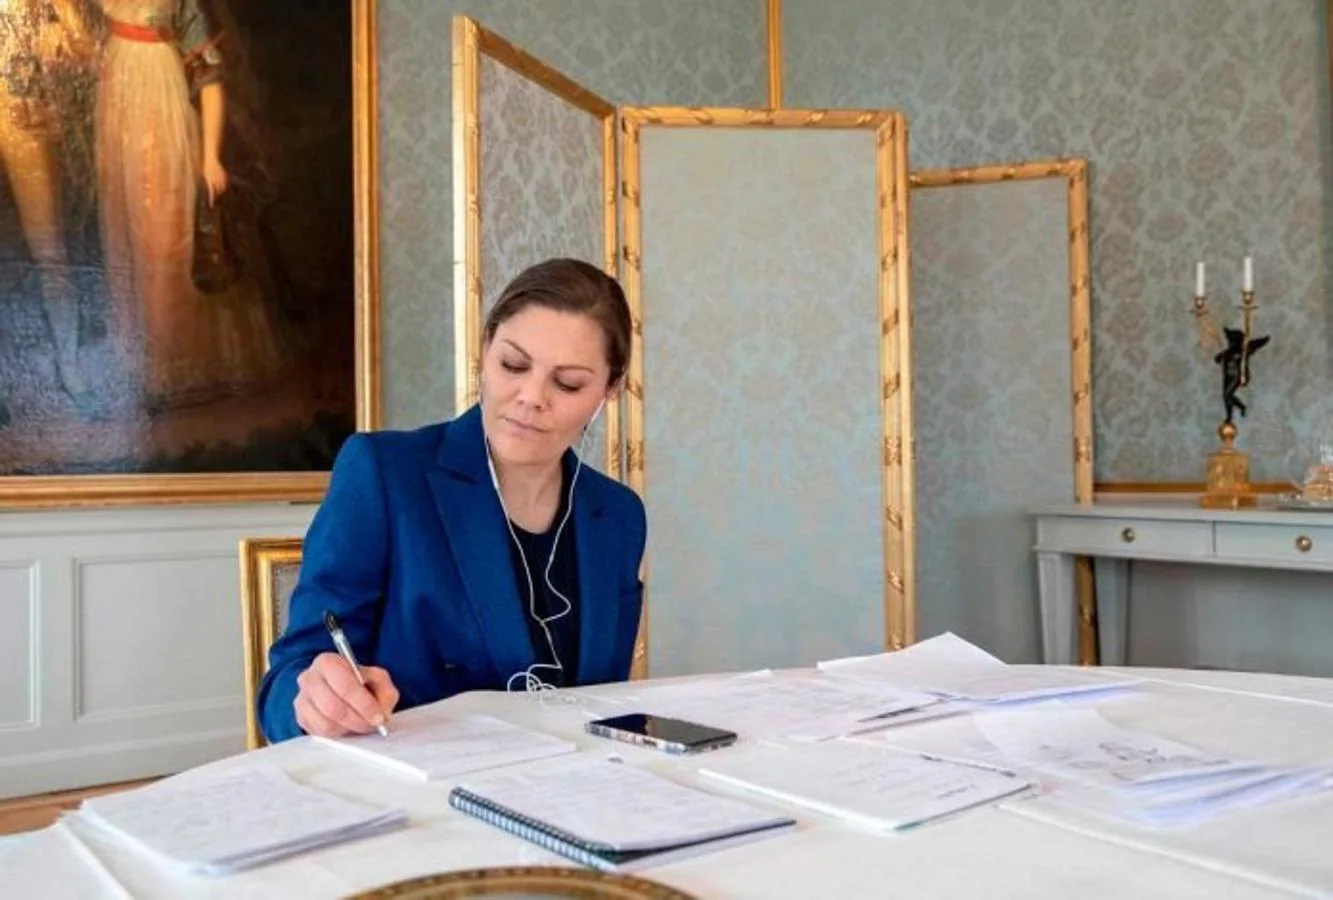 Victoria de Suecia. Siguiendo el ejemplo de la Reina Letizia, Victoria de Suecia cuenta con un despacho sencillo, sin demasiadas cosas que distraigan la atención de los verdaderamente importante: el trabajo